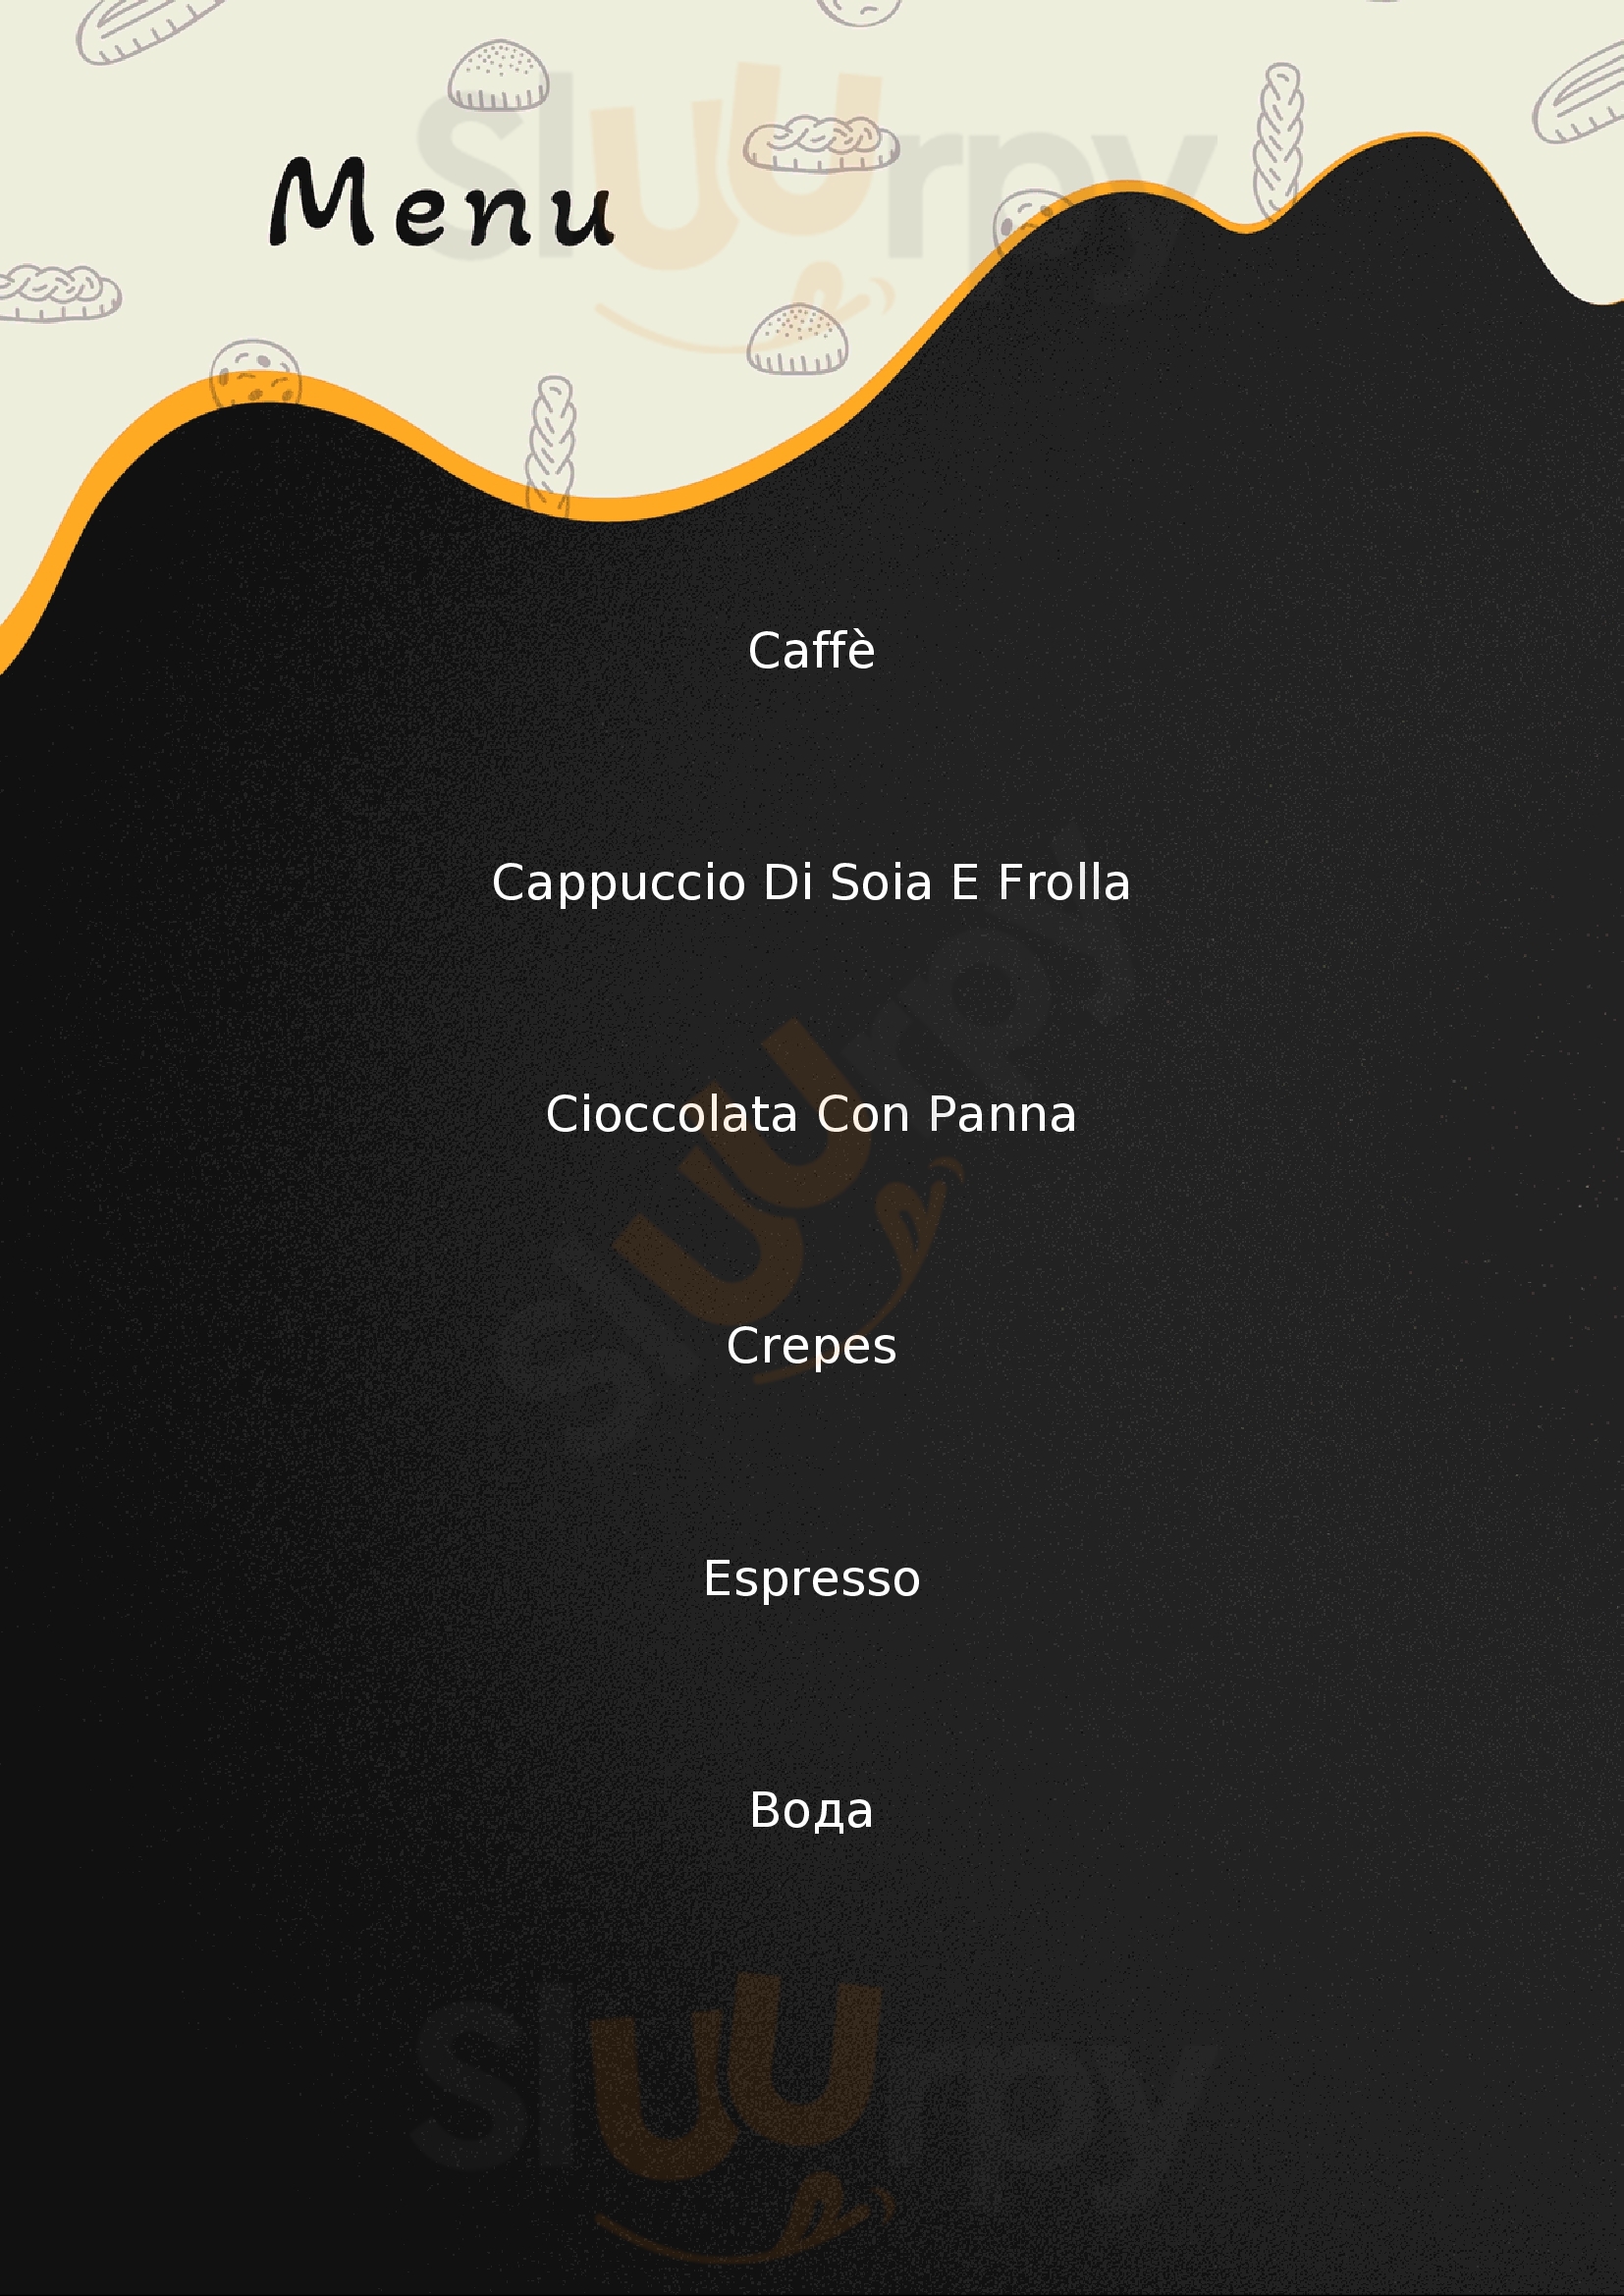 Caffe Napoli - Coni Zugna, Milano